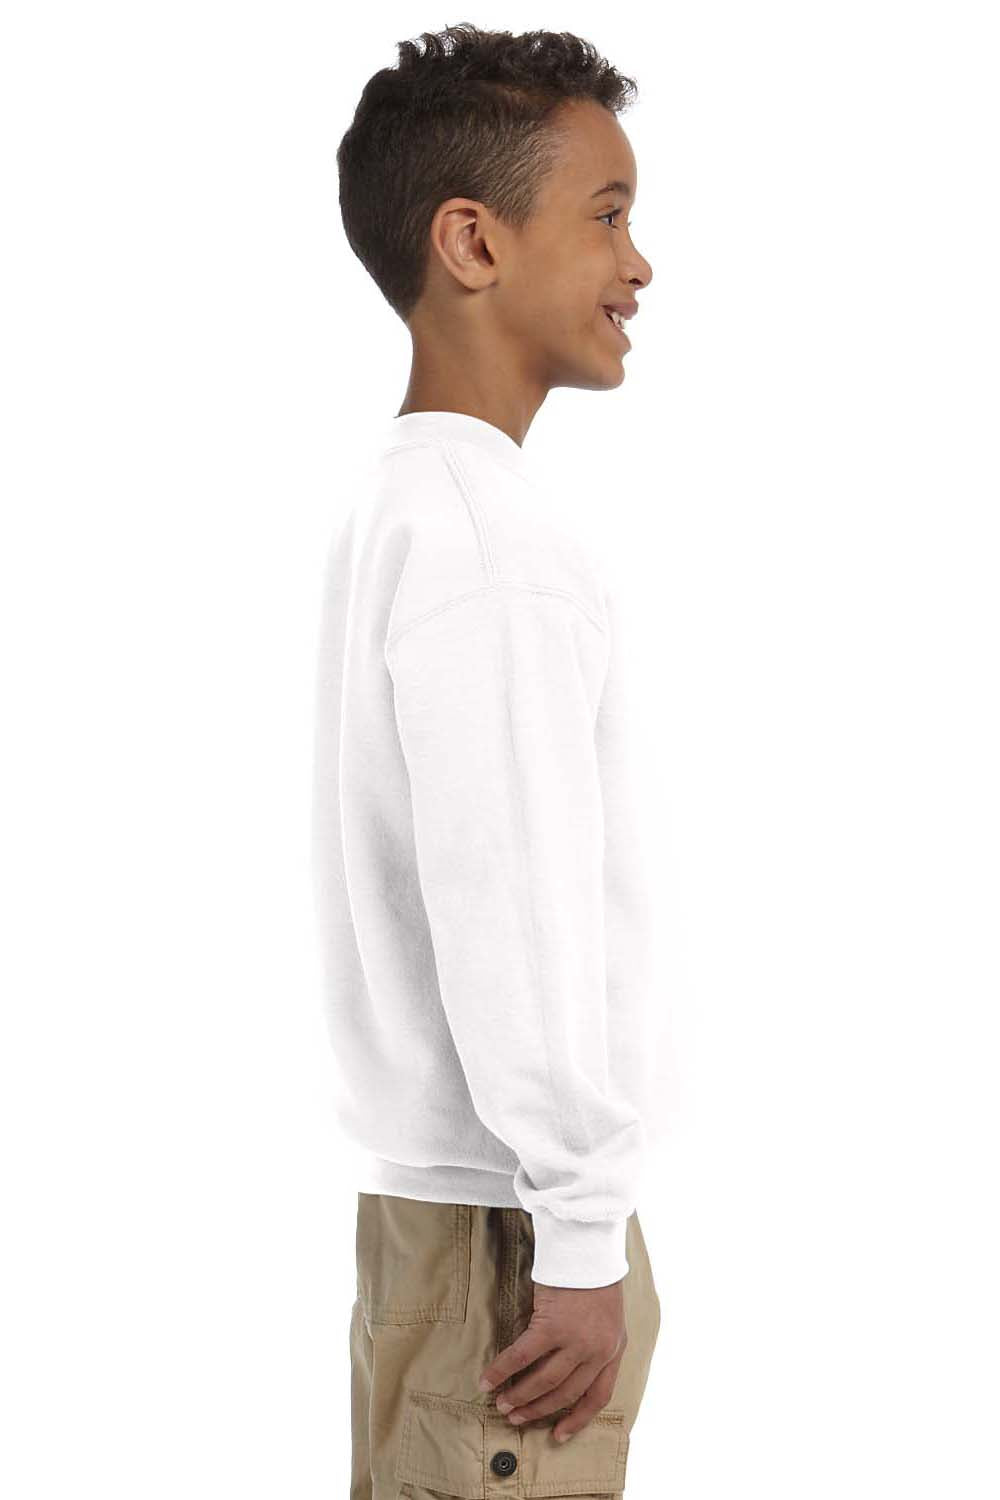 Gildan G180B Youth Fleece Crewneck Sweatshirt White Side